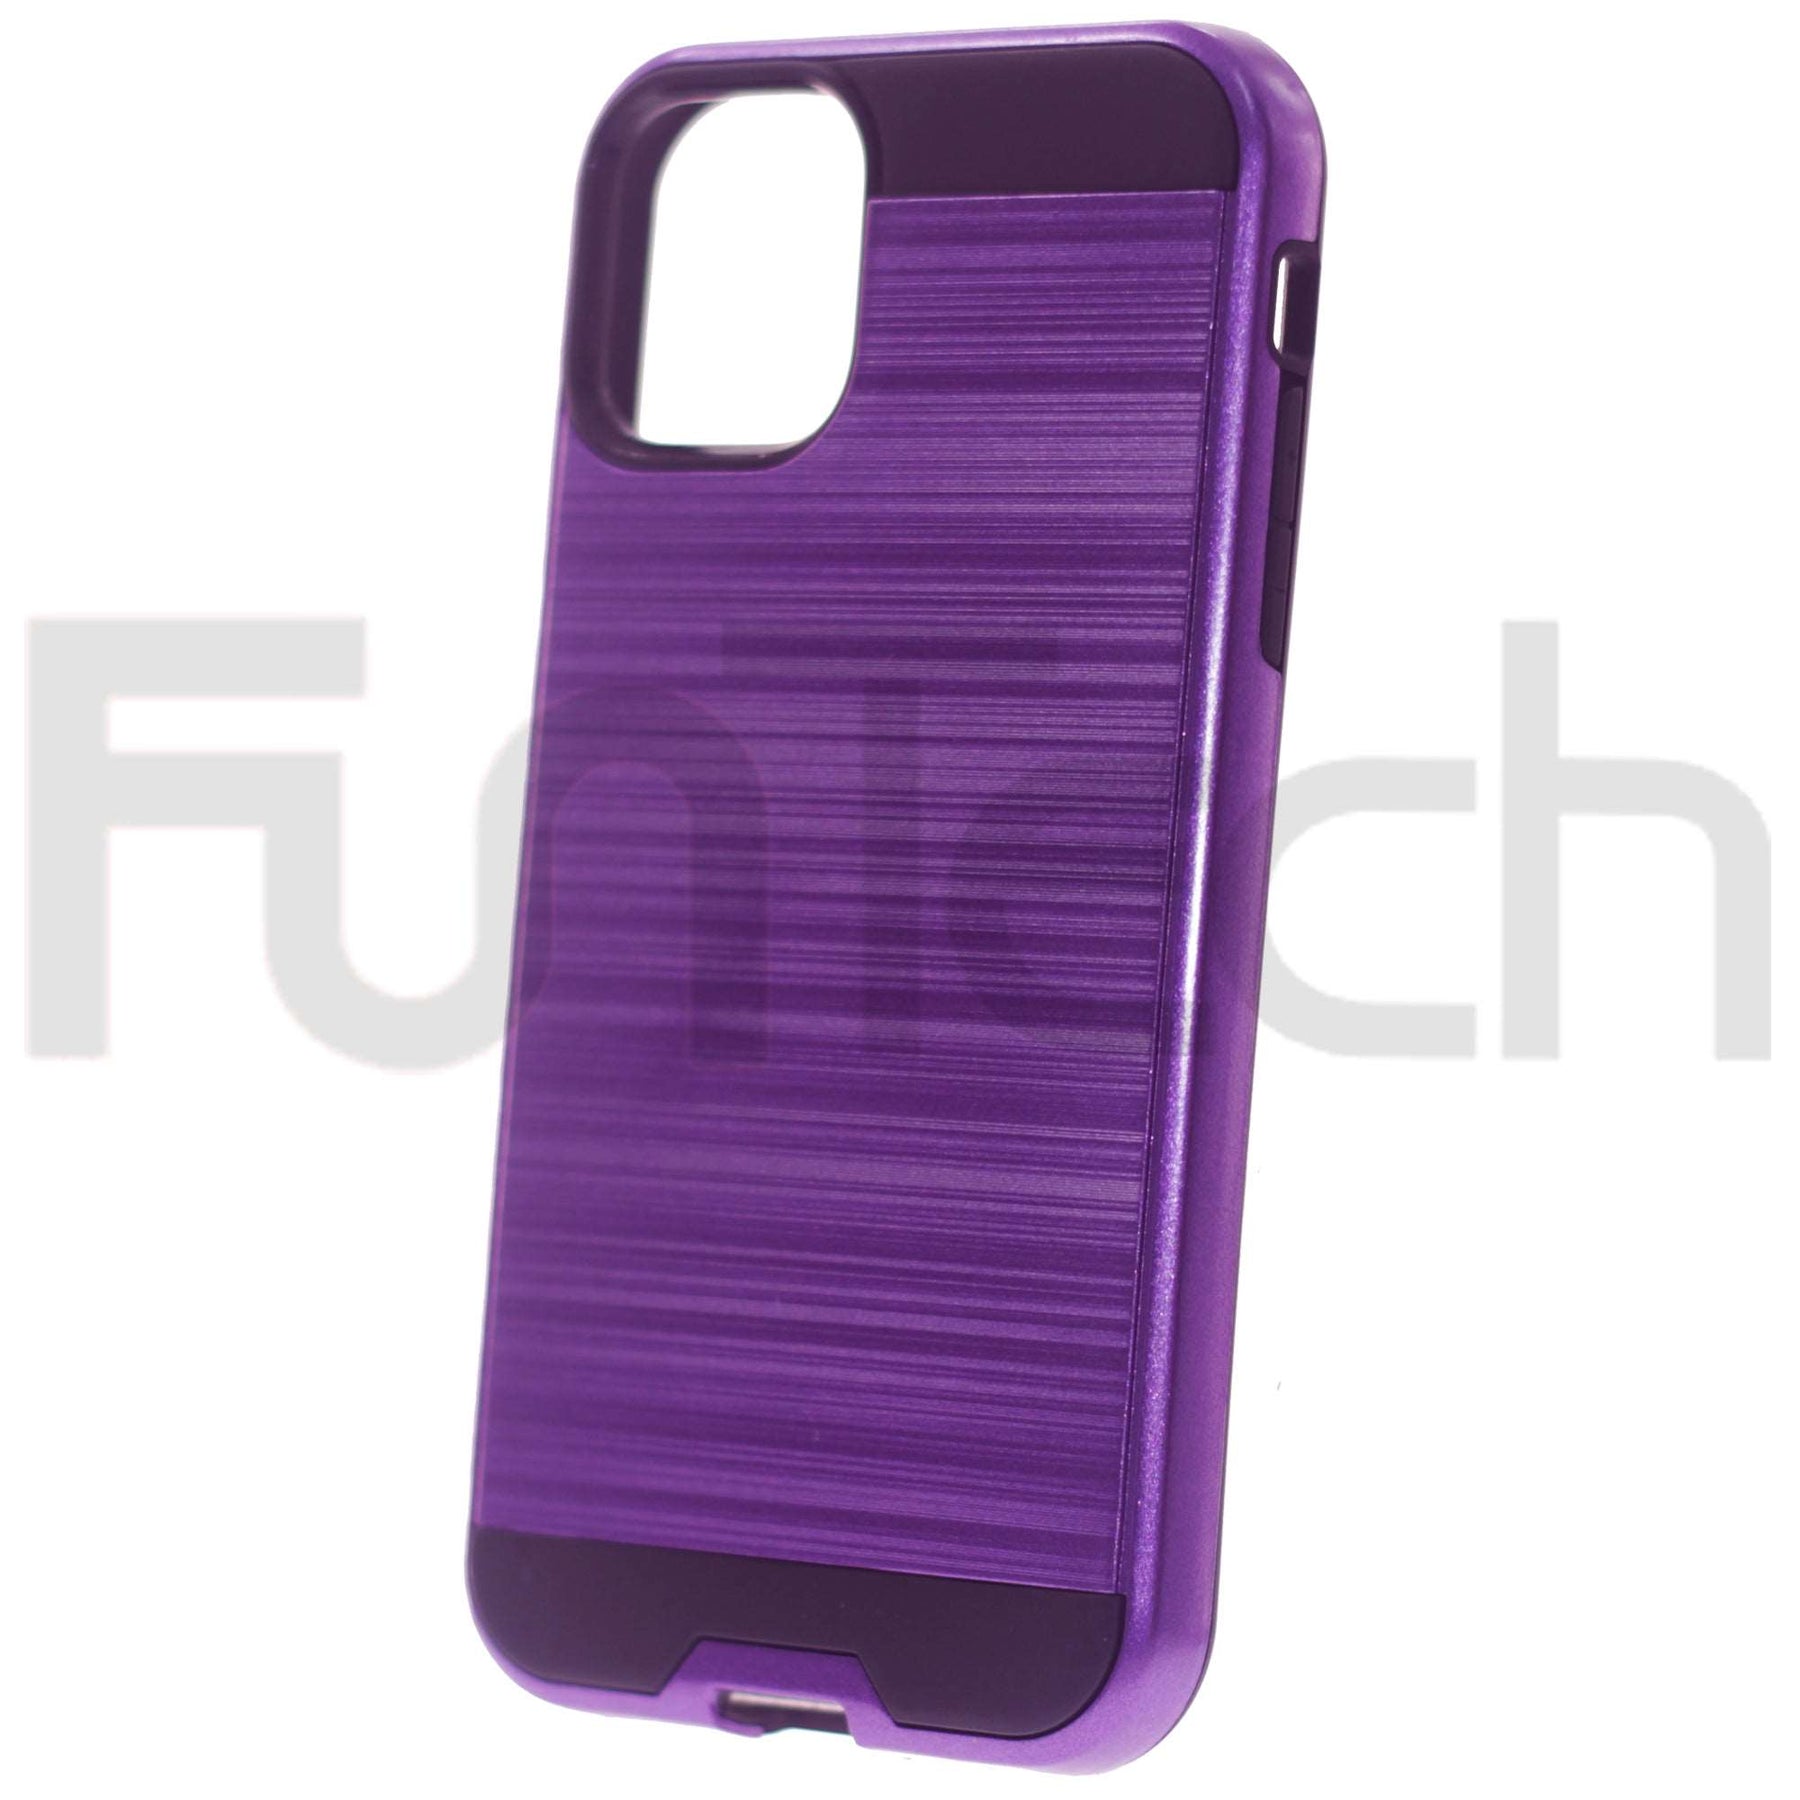 Apple iPhone 11, Slim Armor Case, nColor Purple.